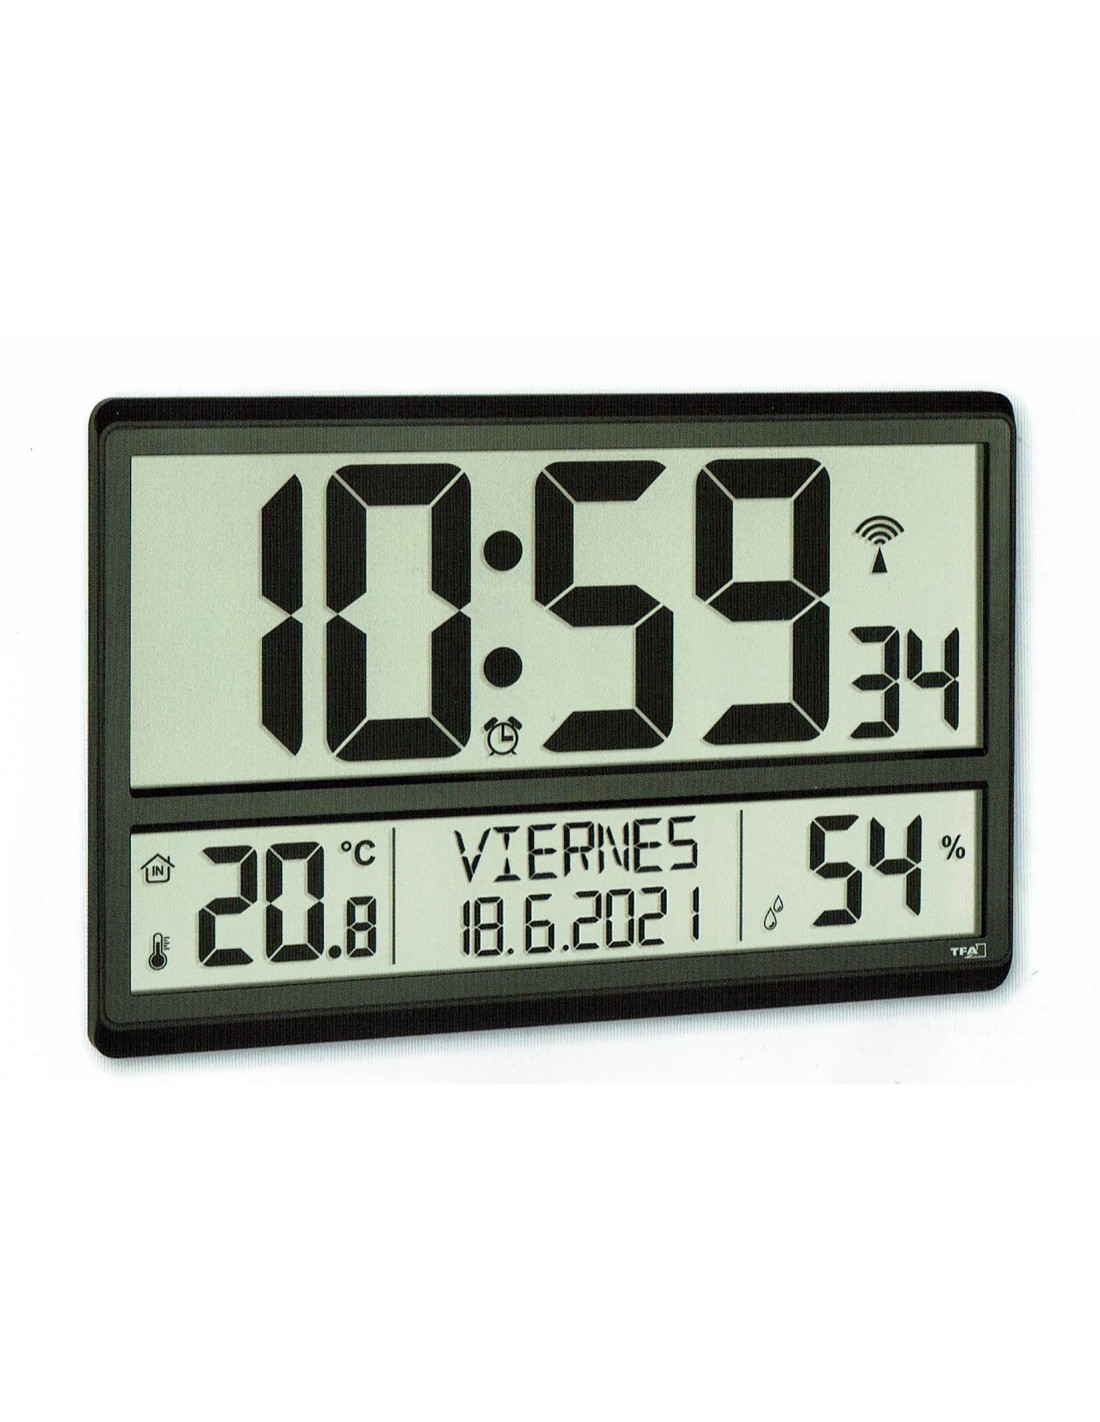 Reloj sobremesa o pared 52 Cm ancho por 18 Cmde alto.Reloj, Fecha, Mes,  Dia, dia de la semana y Temperatura.